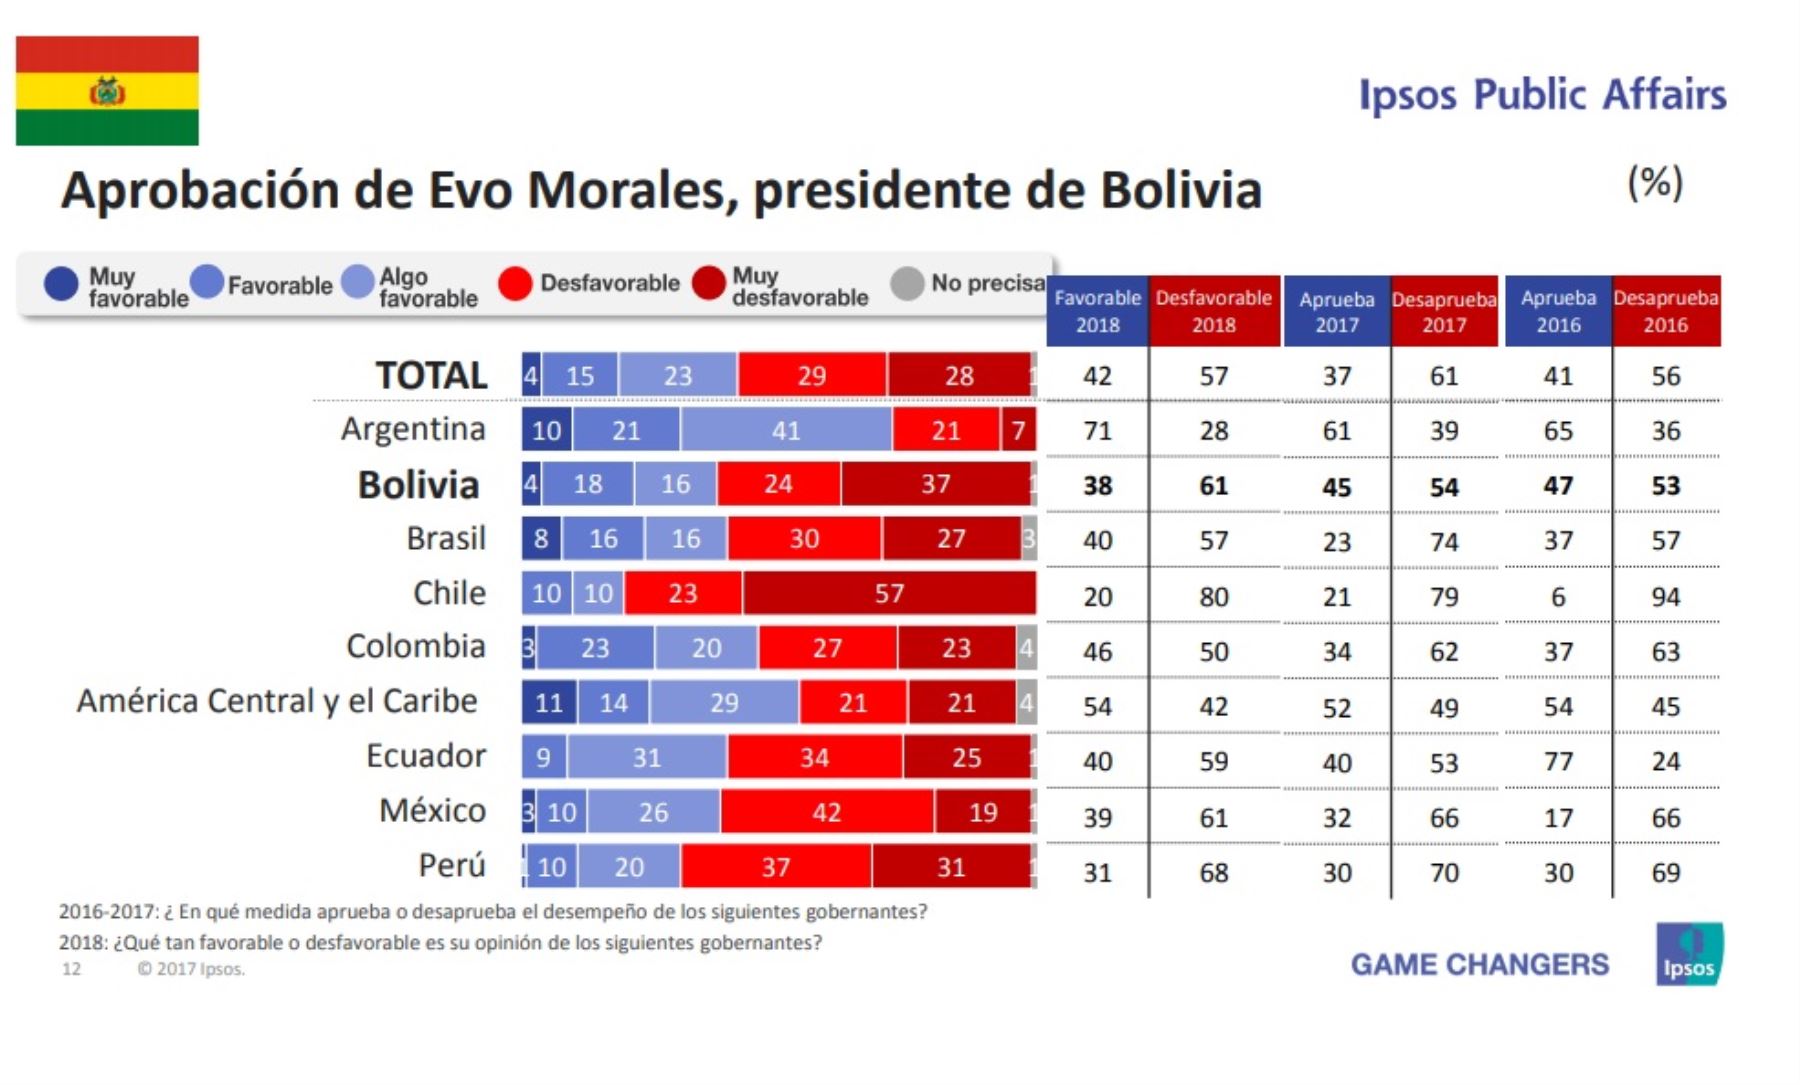 Aprobación del presidente de Bolivia, Evo Morales. Encuesta Ipsos Public Affairs 2018.